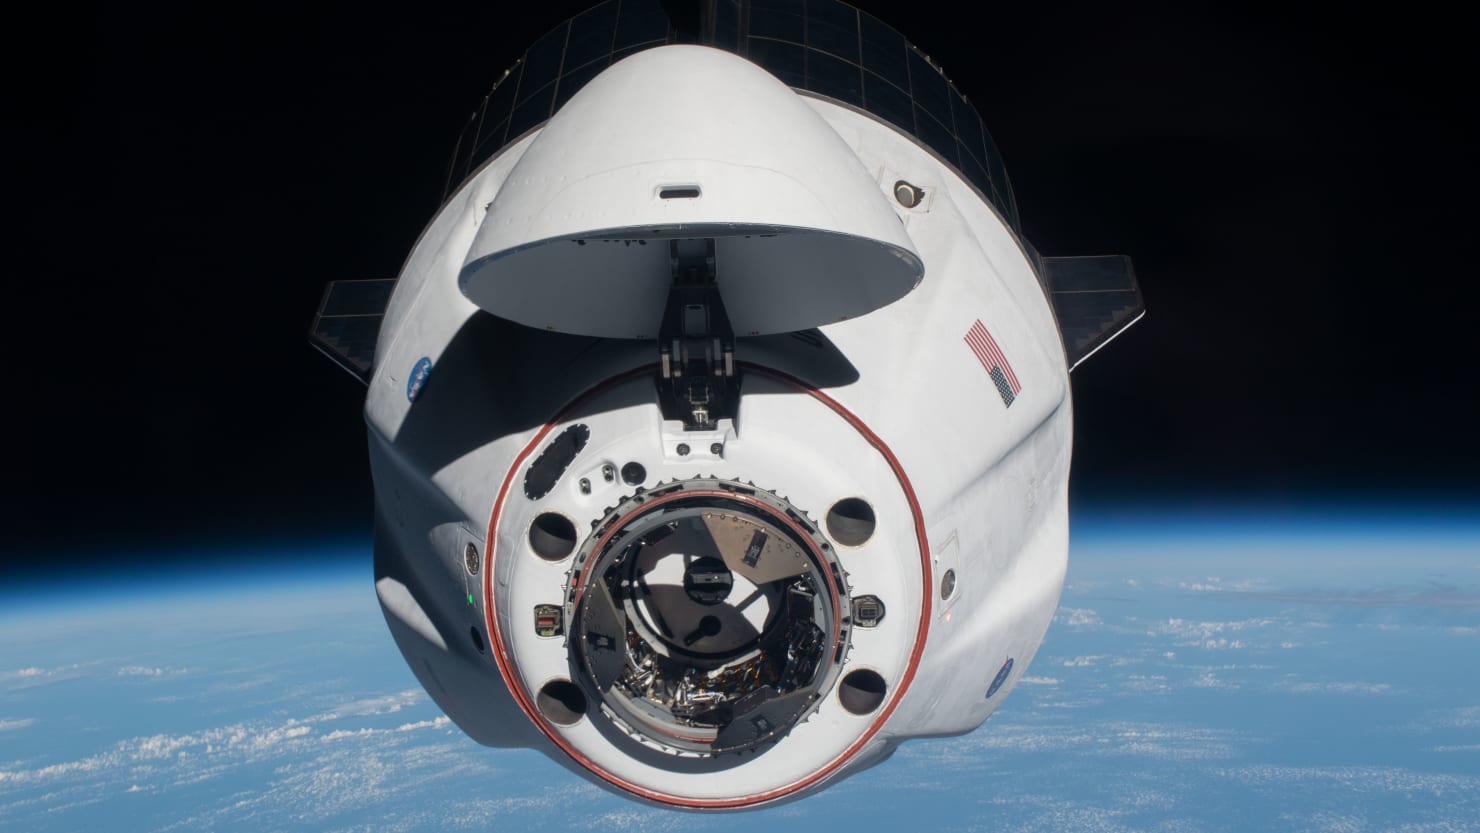 La NASA sta valutando l’utilizzo di SpaceX per salvare gli astronauti dopo la fuga dalla stazione spaziale russa